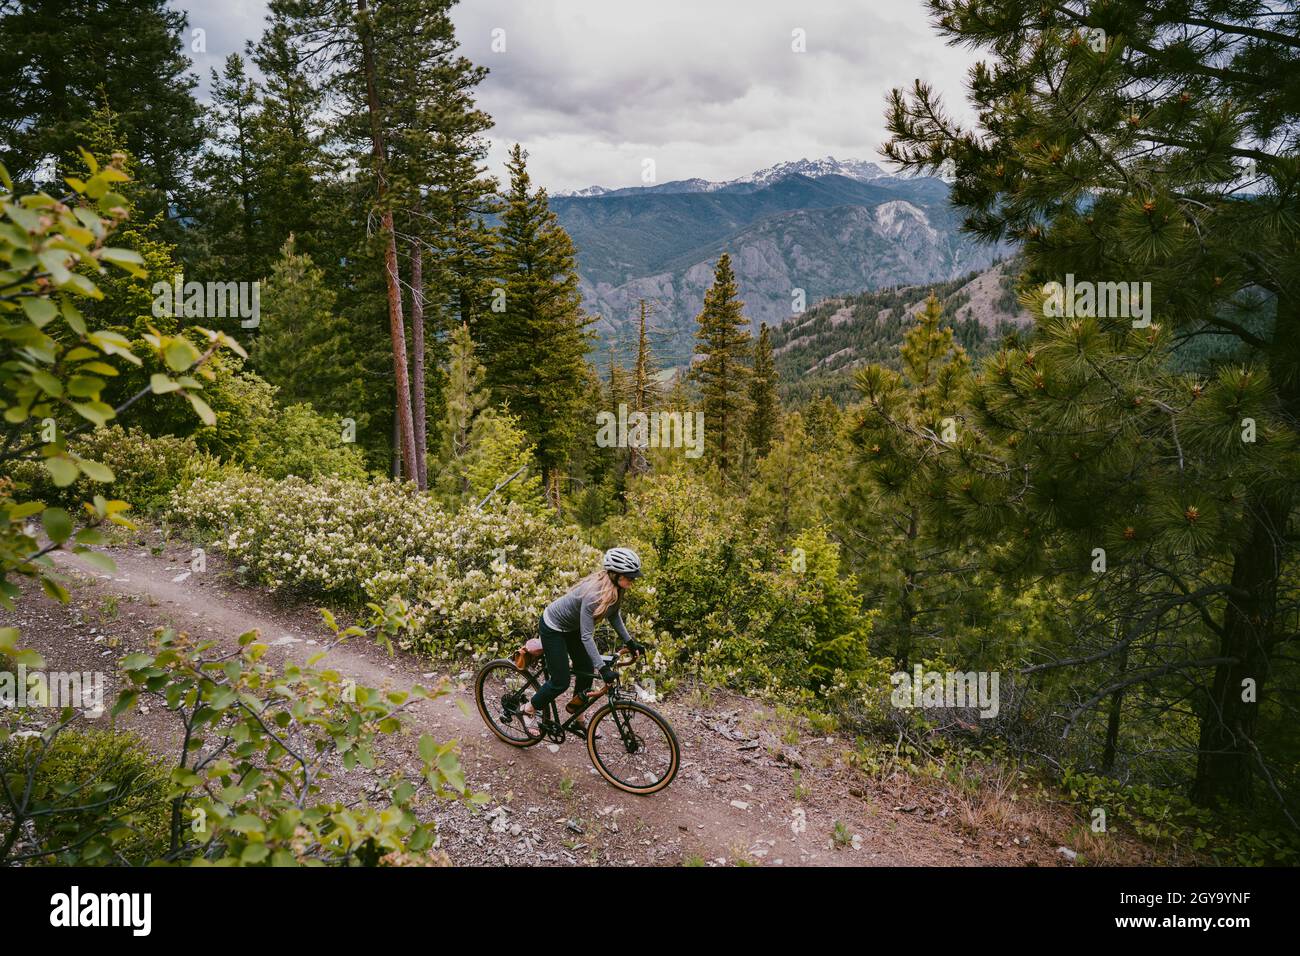 Woman bikes on rocky ridge trail overlooking mountain valley Stock Photo